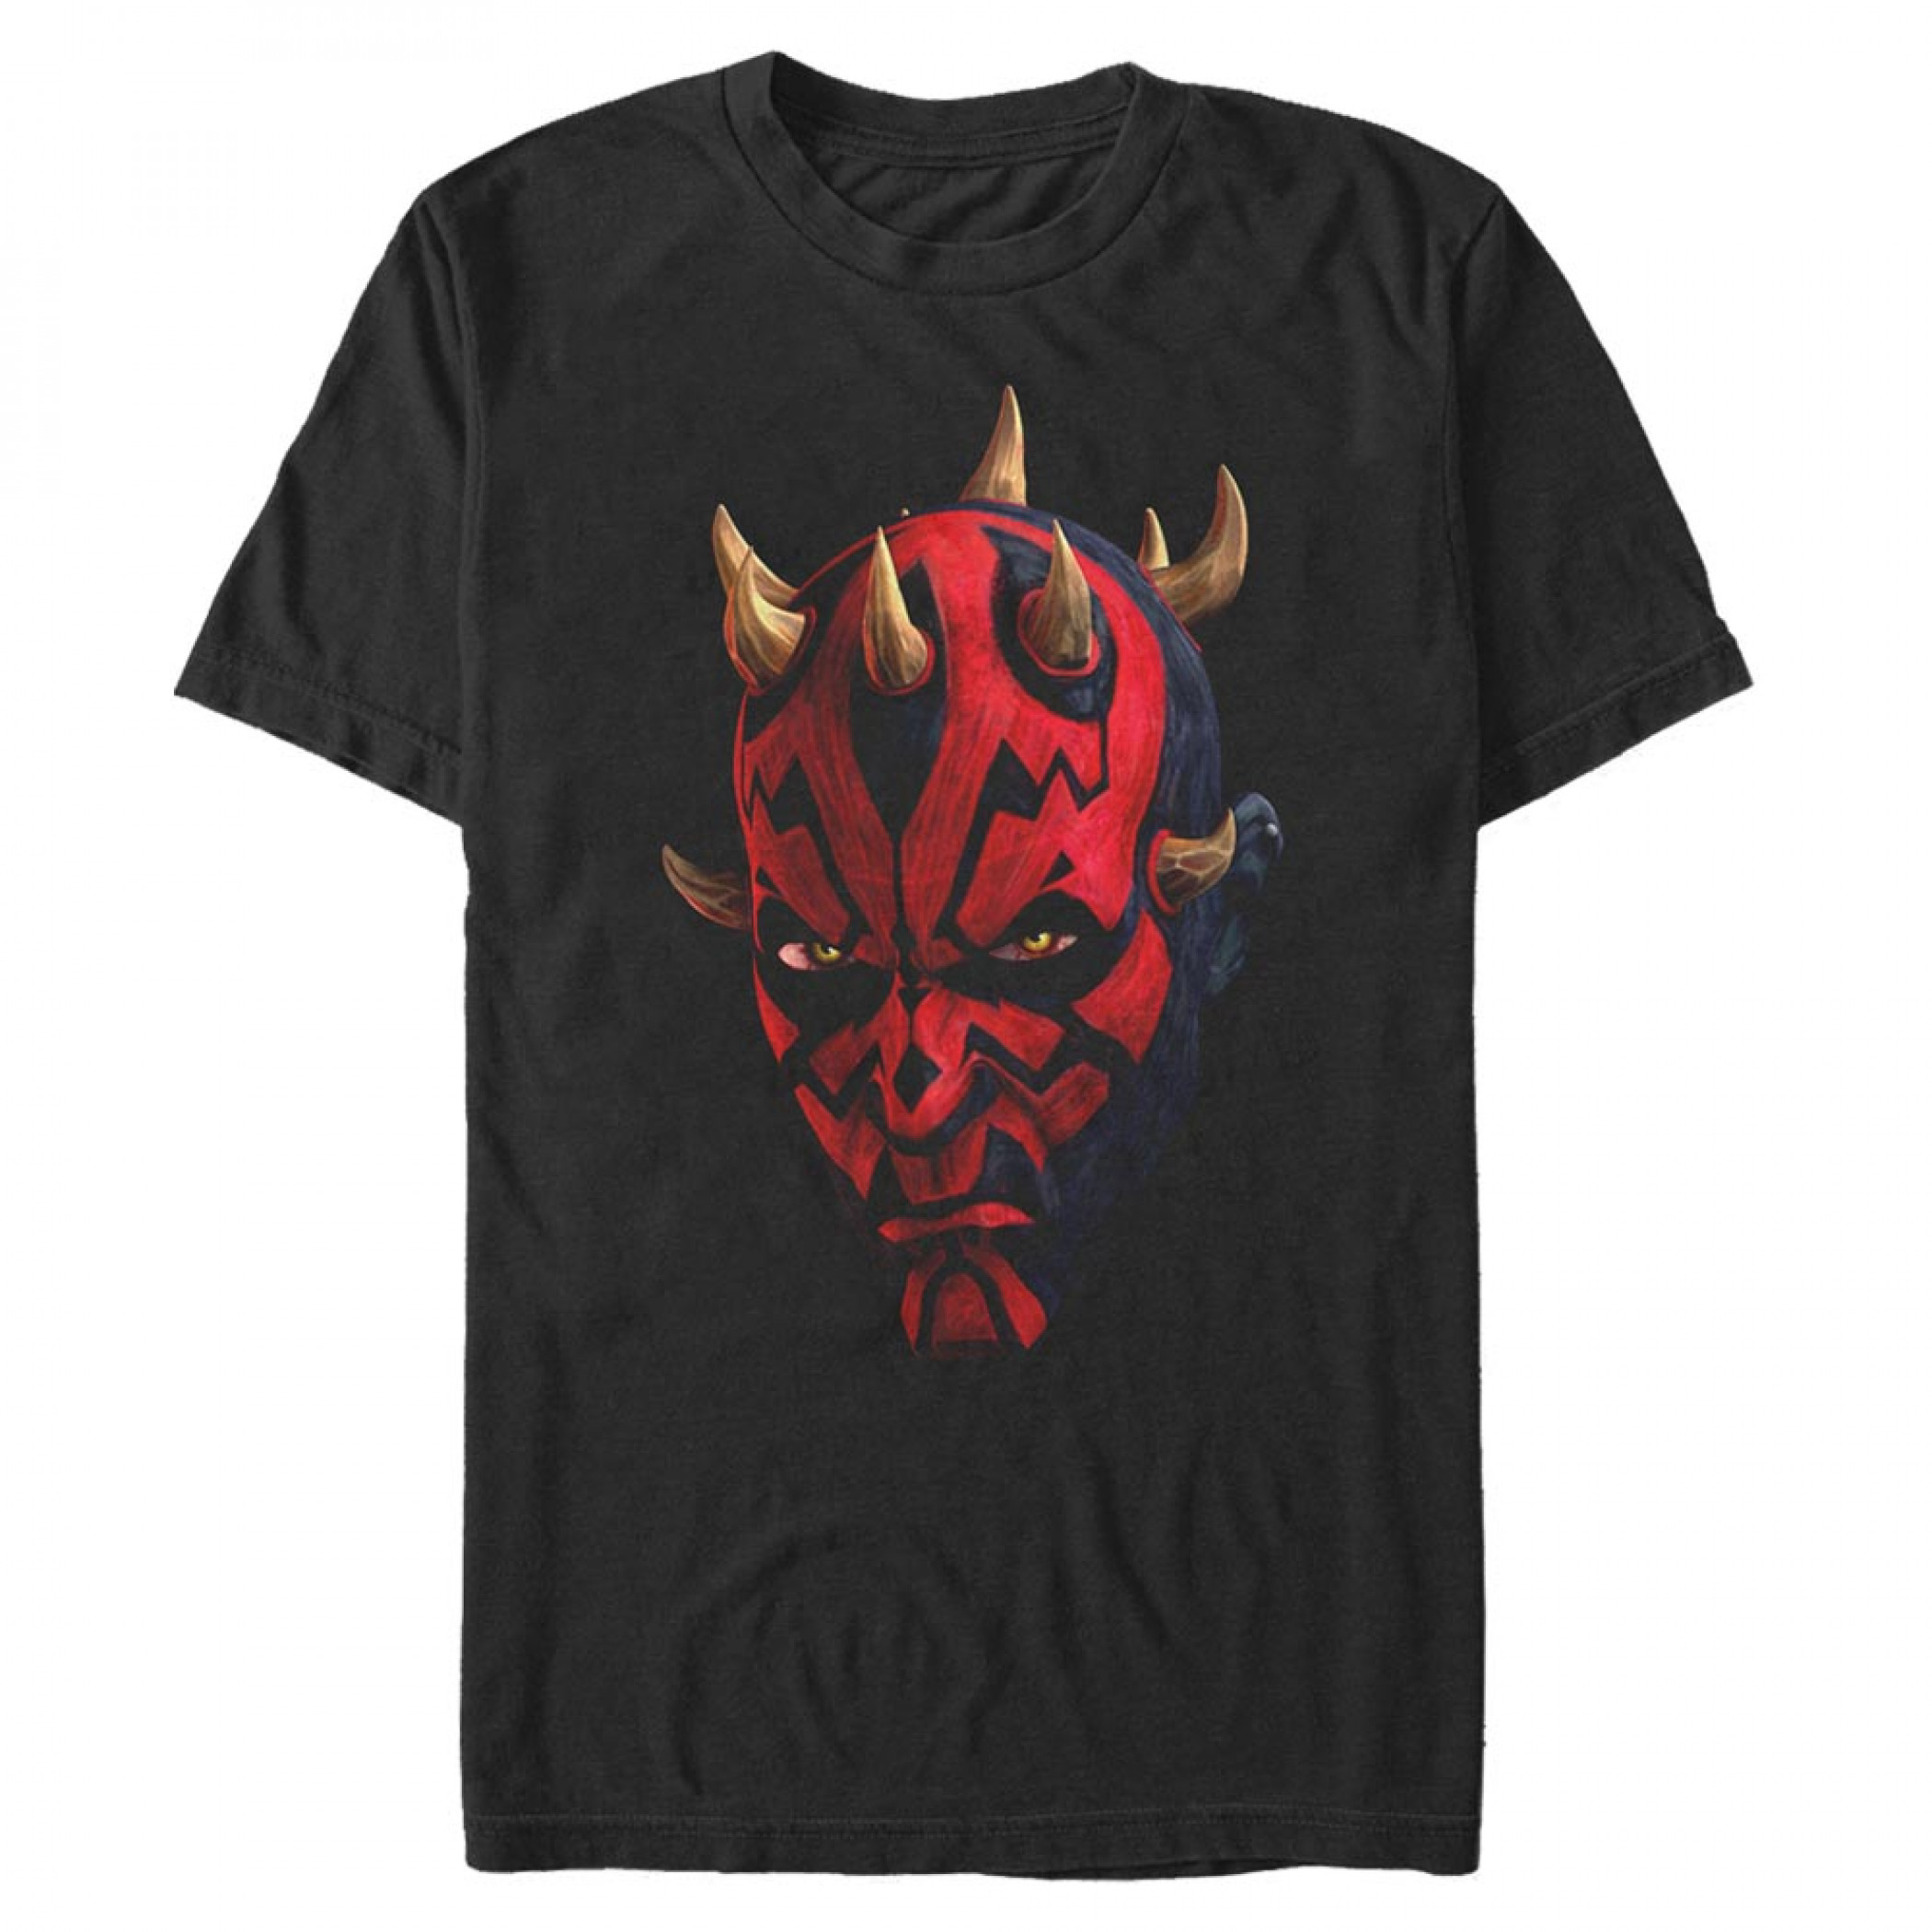 Star Wars Clone Wars Darth Maul Portrait T-Shirt